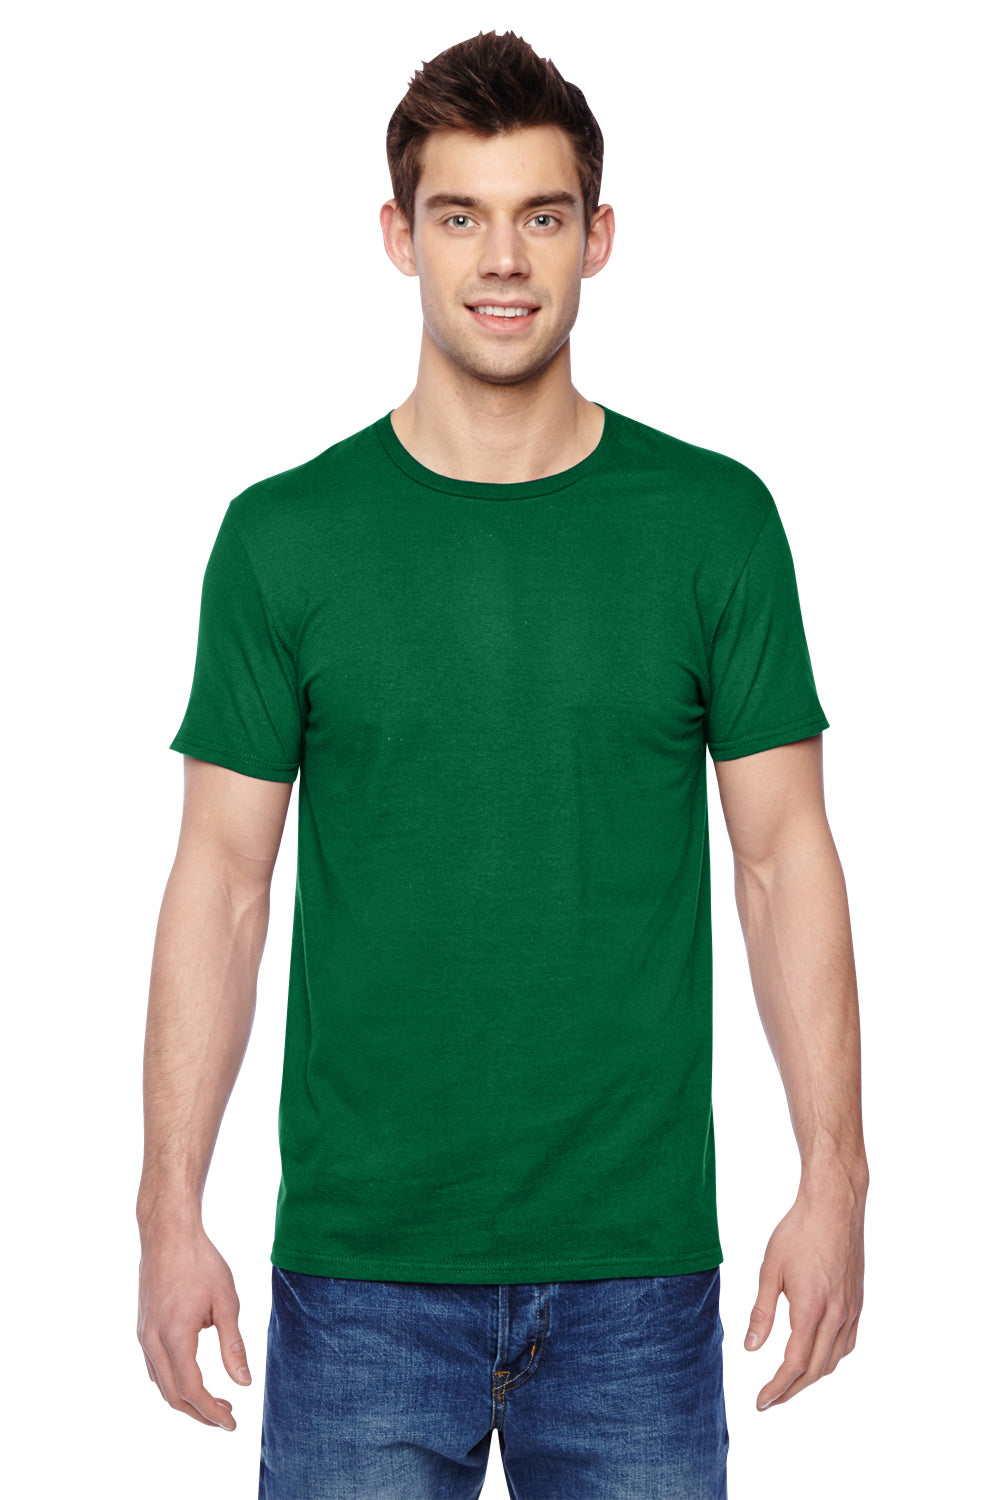 Fruit Of The Loom SF45R Mens Sofspun Jersey Short Sleeve Crewneck T-Shirt Clover Green Front